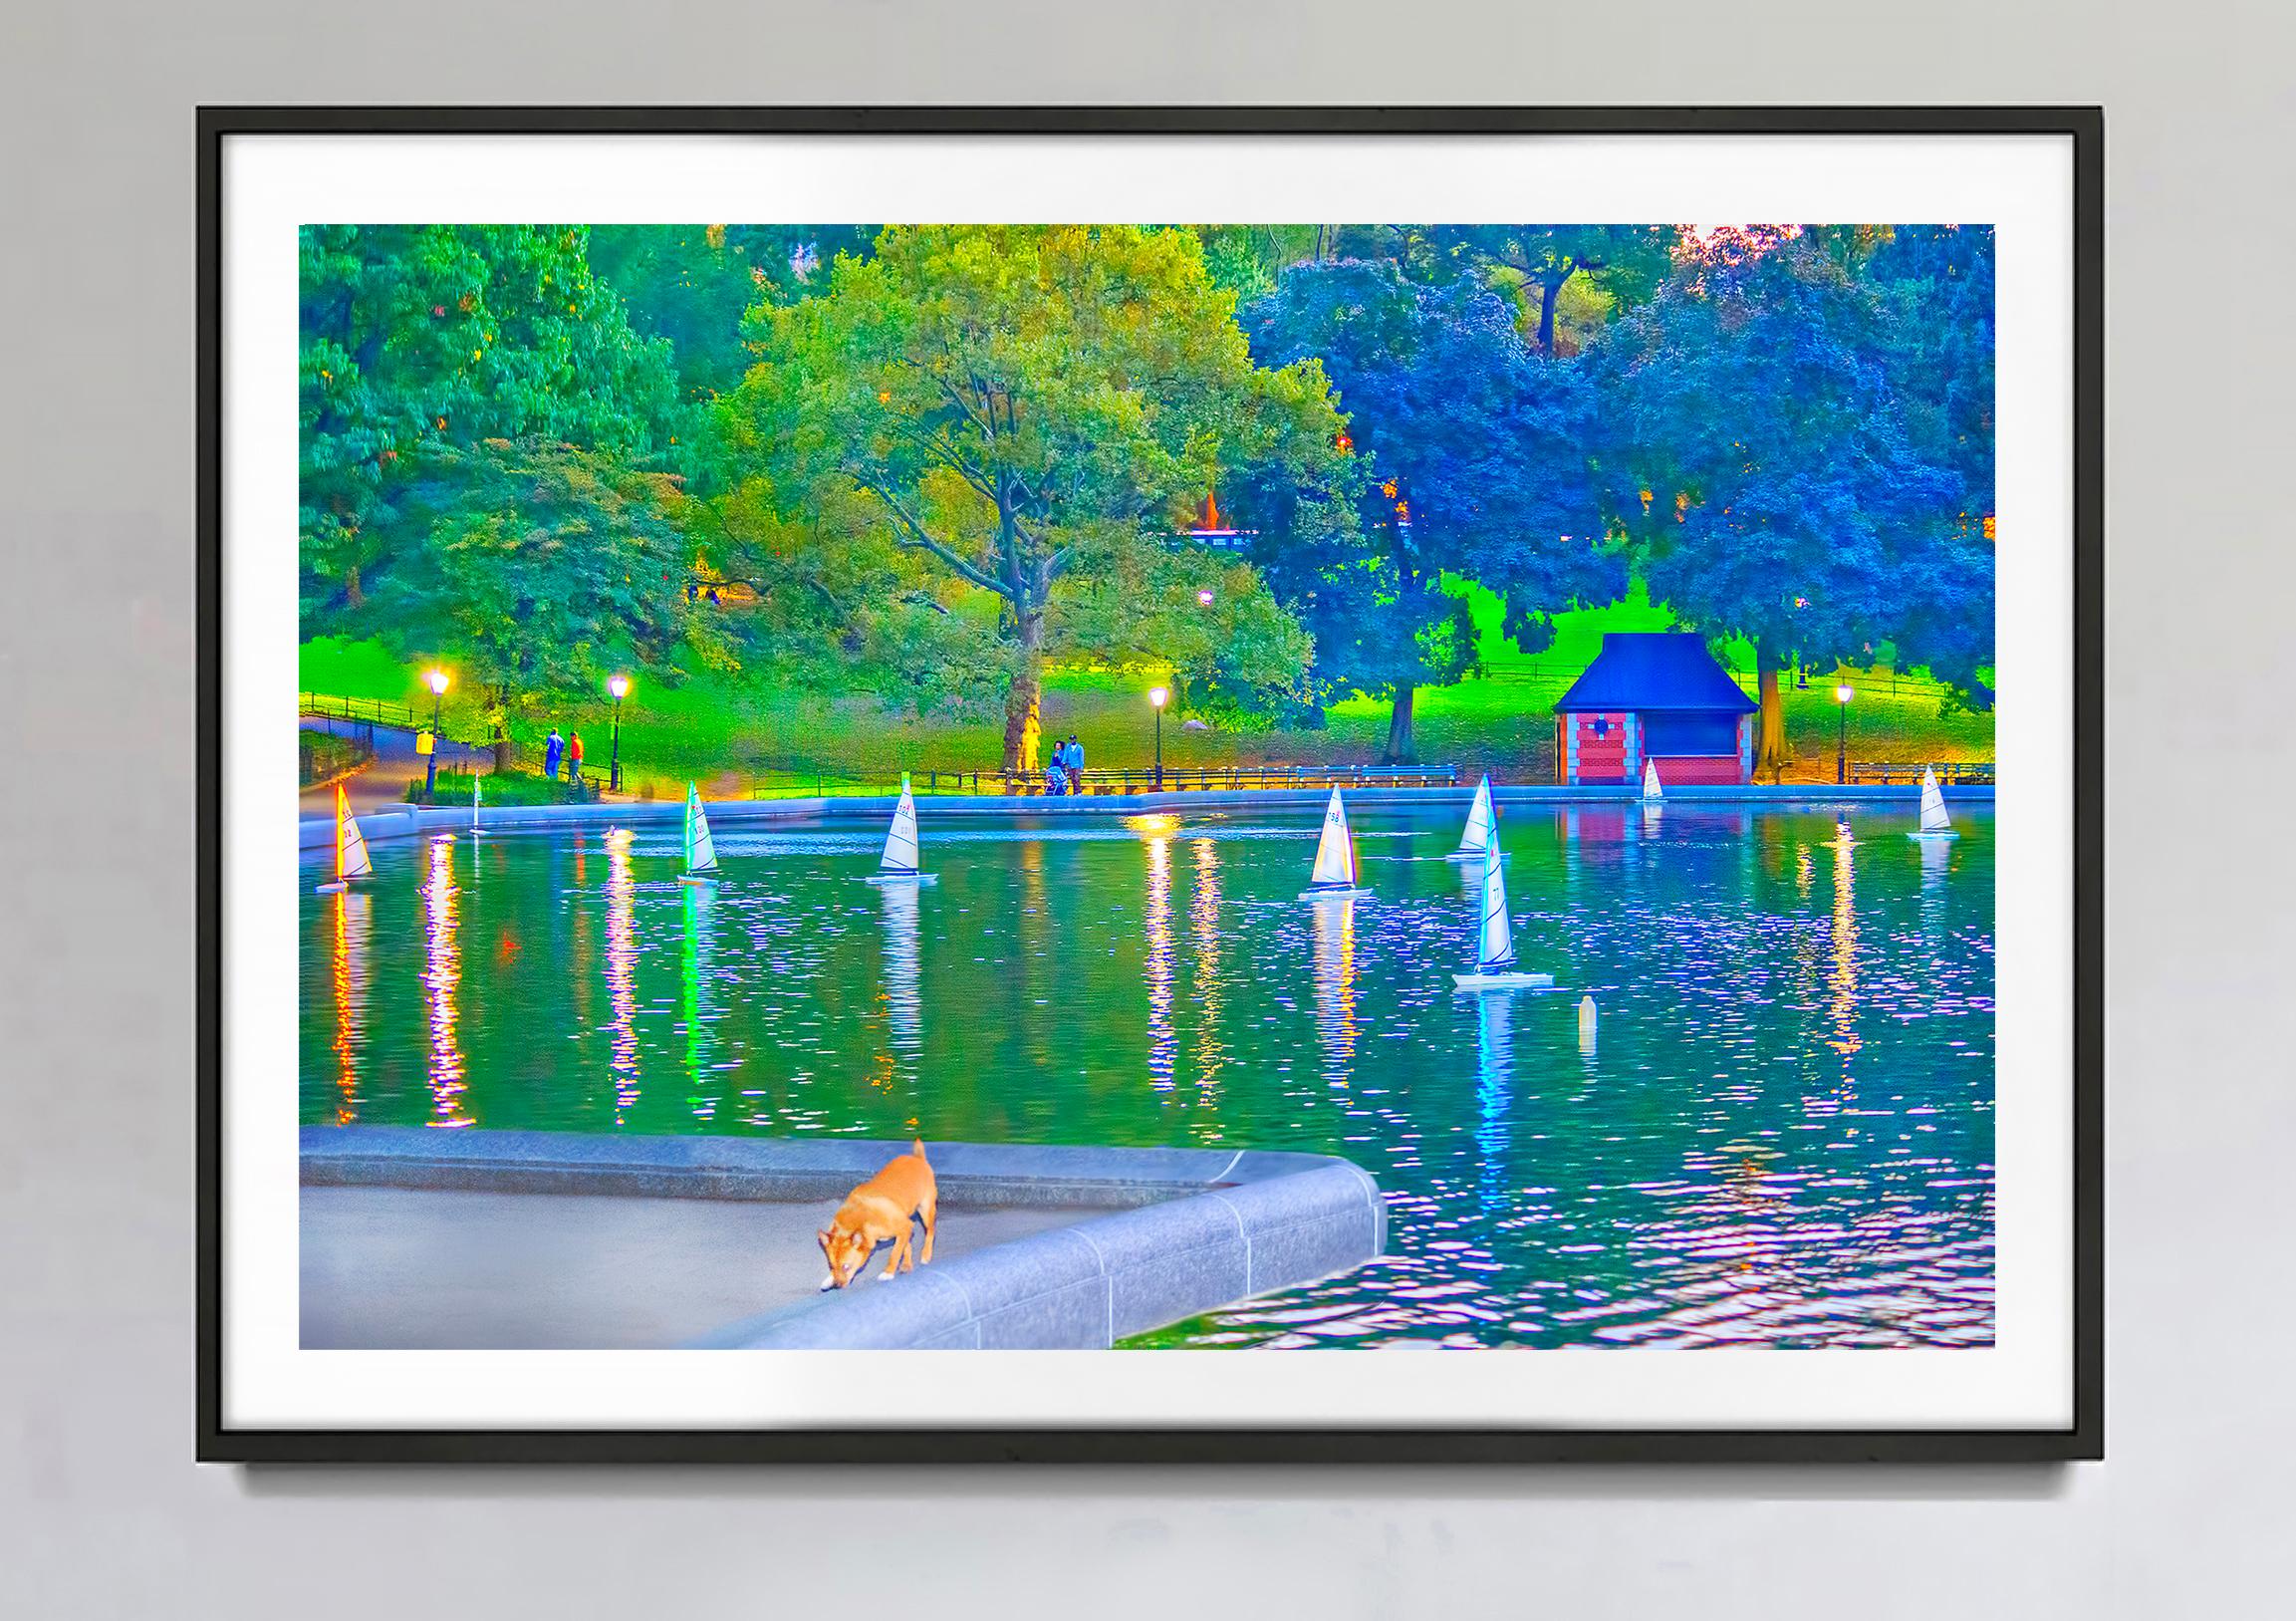 Modèle réduit de voiliers dans l'étang de Central Park Pond, New York - Photograph de Mitchell Funk